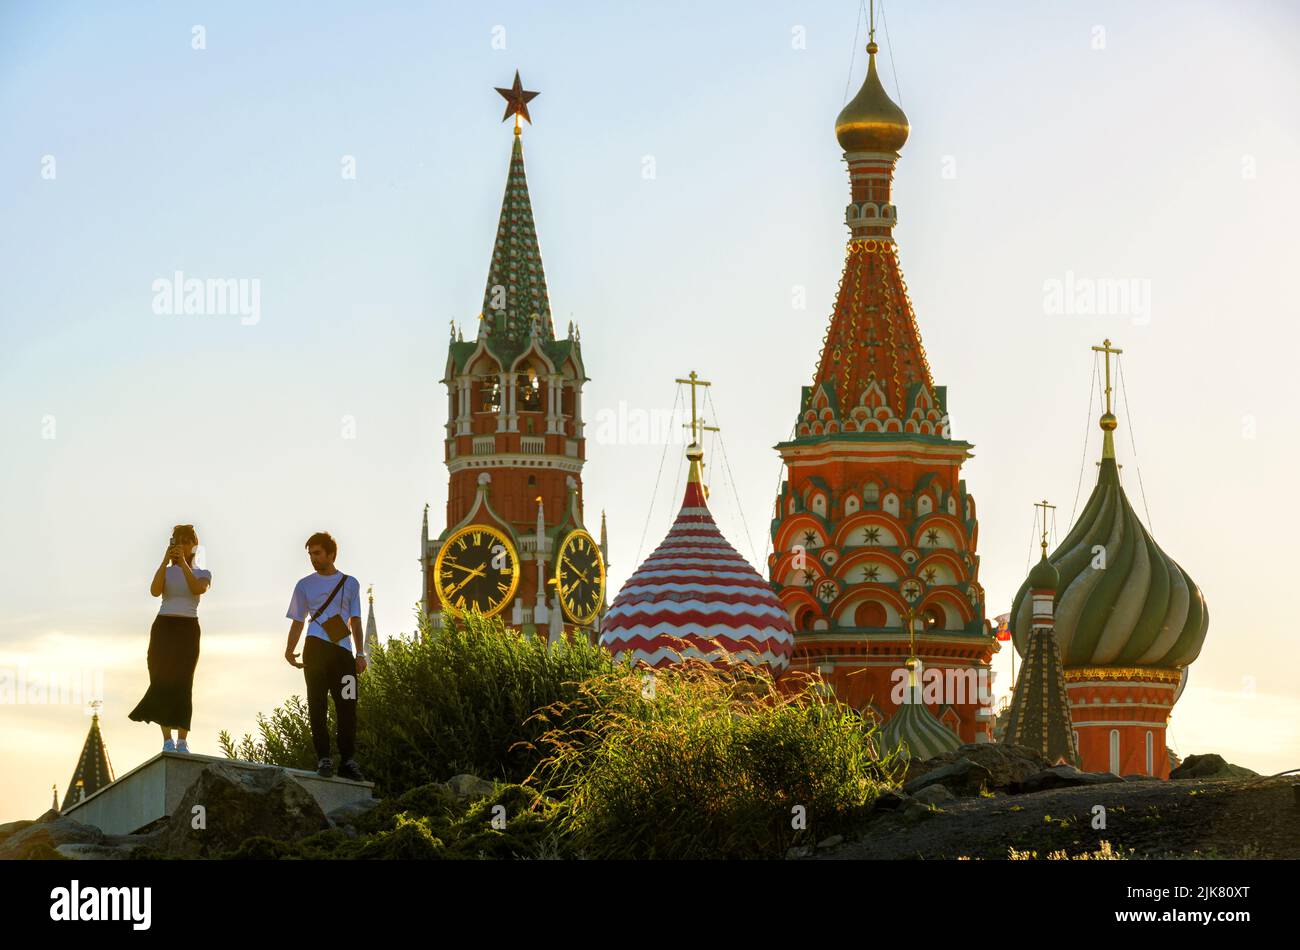 Moskau - 28. Jun 2022: Menschen wandern im gepflegten Zaryadye Park in der Nähe des Kremls und der Basilius-Kathedrale, Moskau, Russland. Dieser Ort ist Touristenattraktion Stockfoto